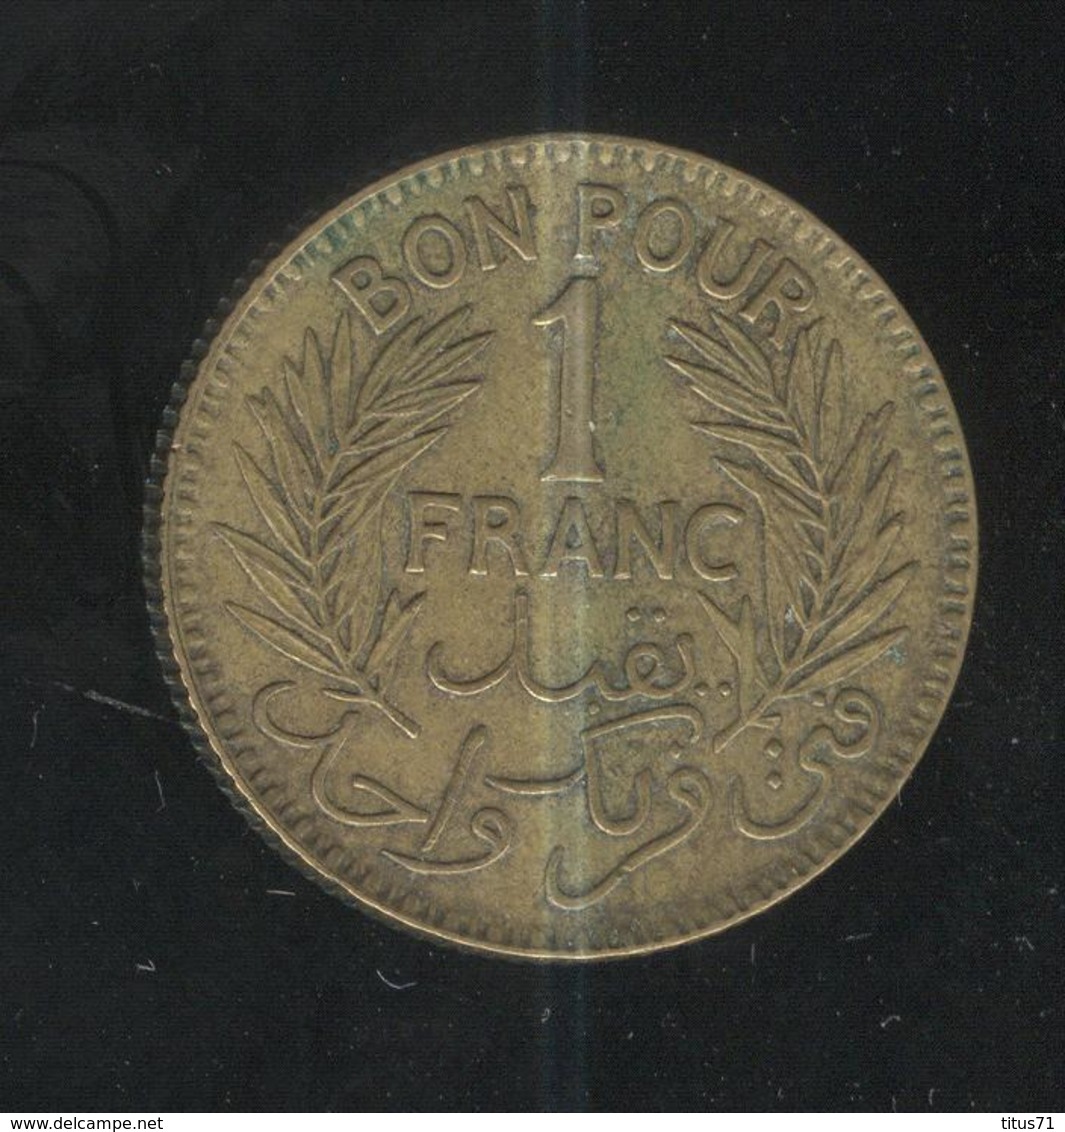 1 Franc Tunisie 1941 - Tunisie